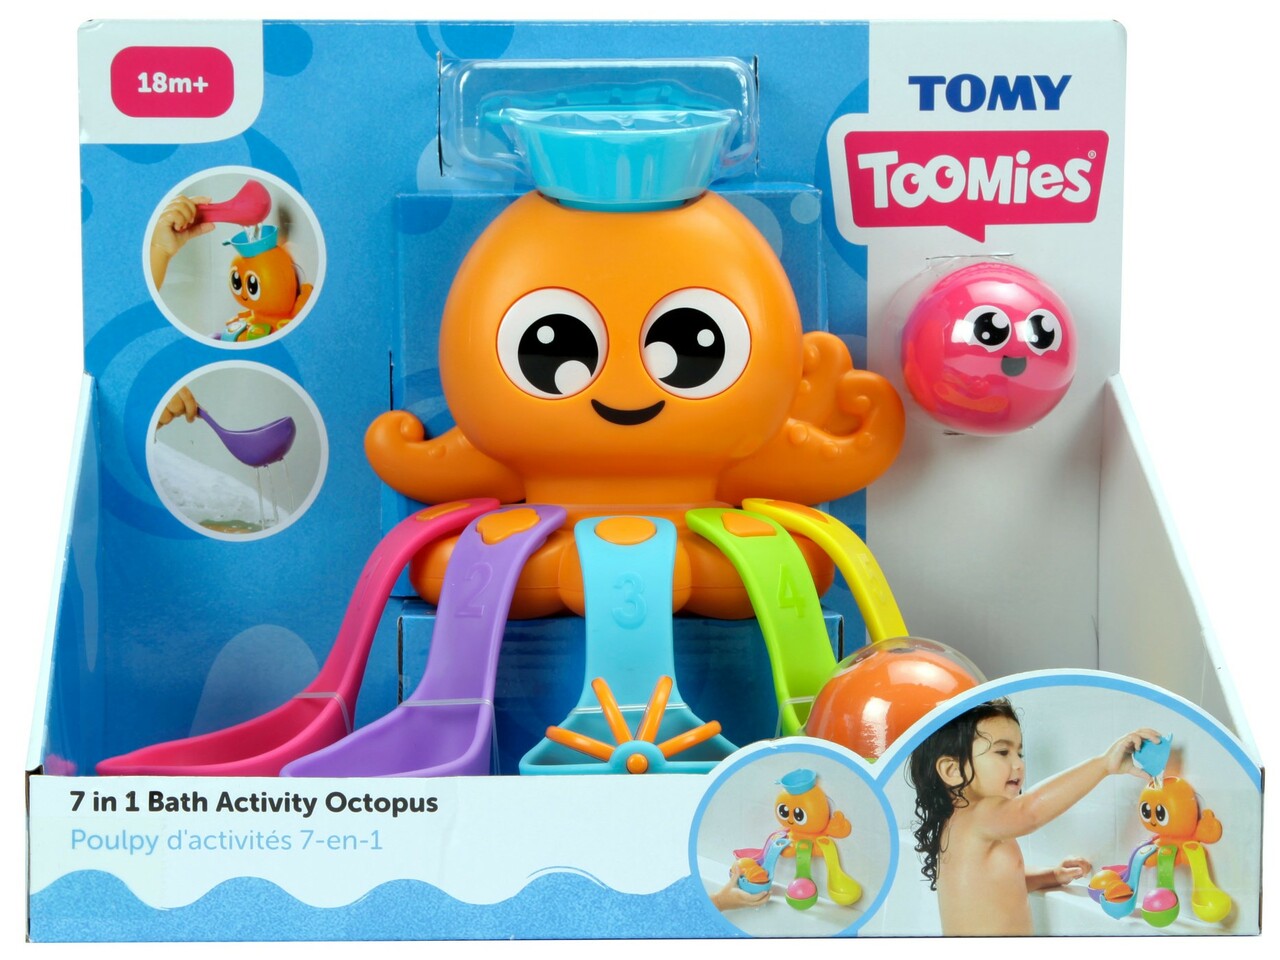 7 in 1 Bath Activity Octopus - Tomy